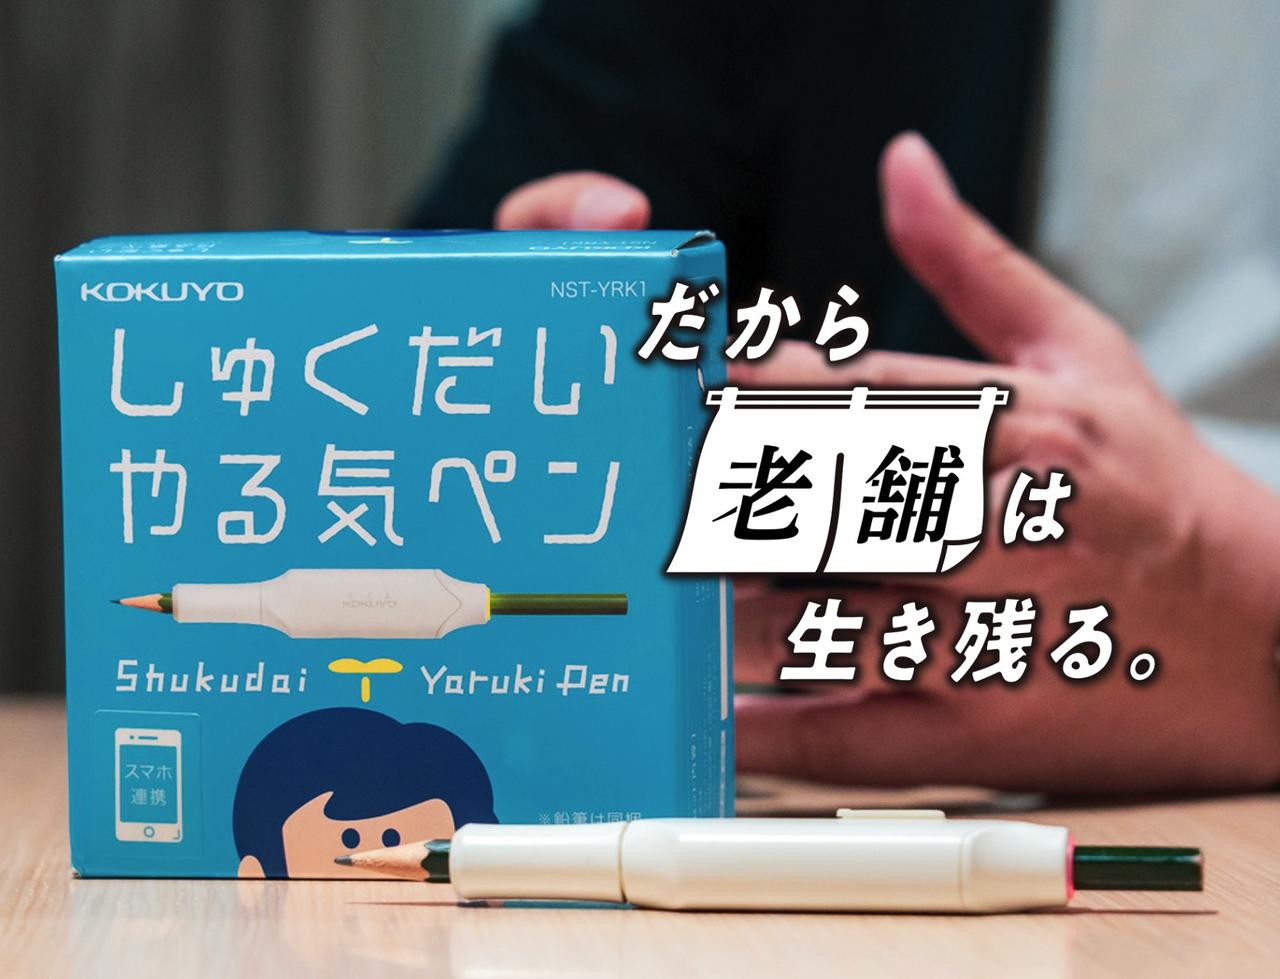 コクヨが初めてIoT文具として発売した｢しゅくだいやる気ペン｣。2019年7月の発売以来、約2万5000台を販売している。